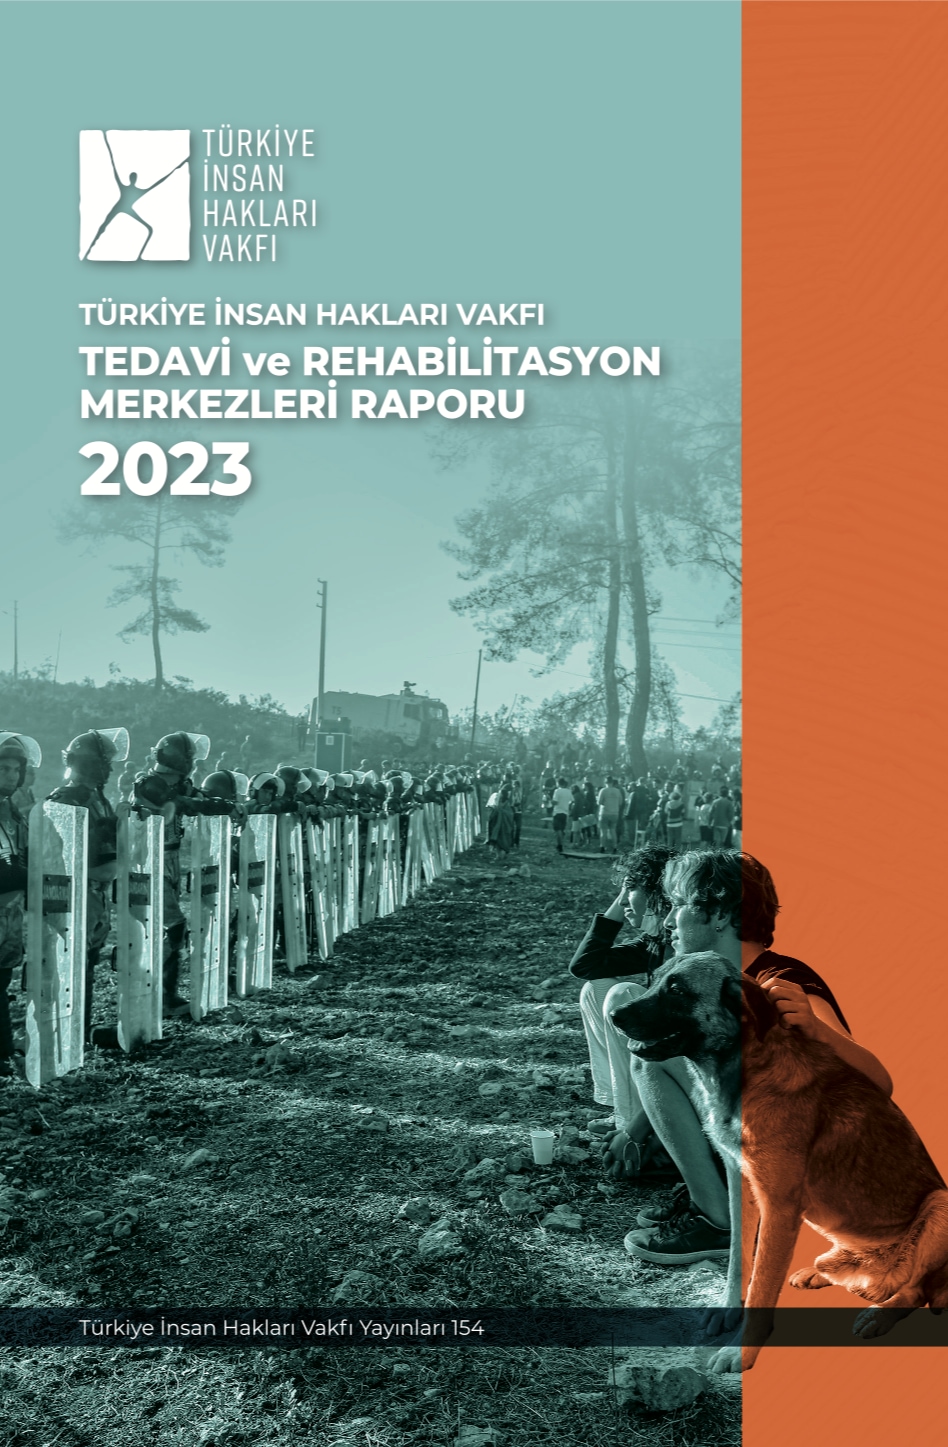 TIHV: 781 denuncias de tortura en Turquía en 2023, acumulando 7.548 en la última década